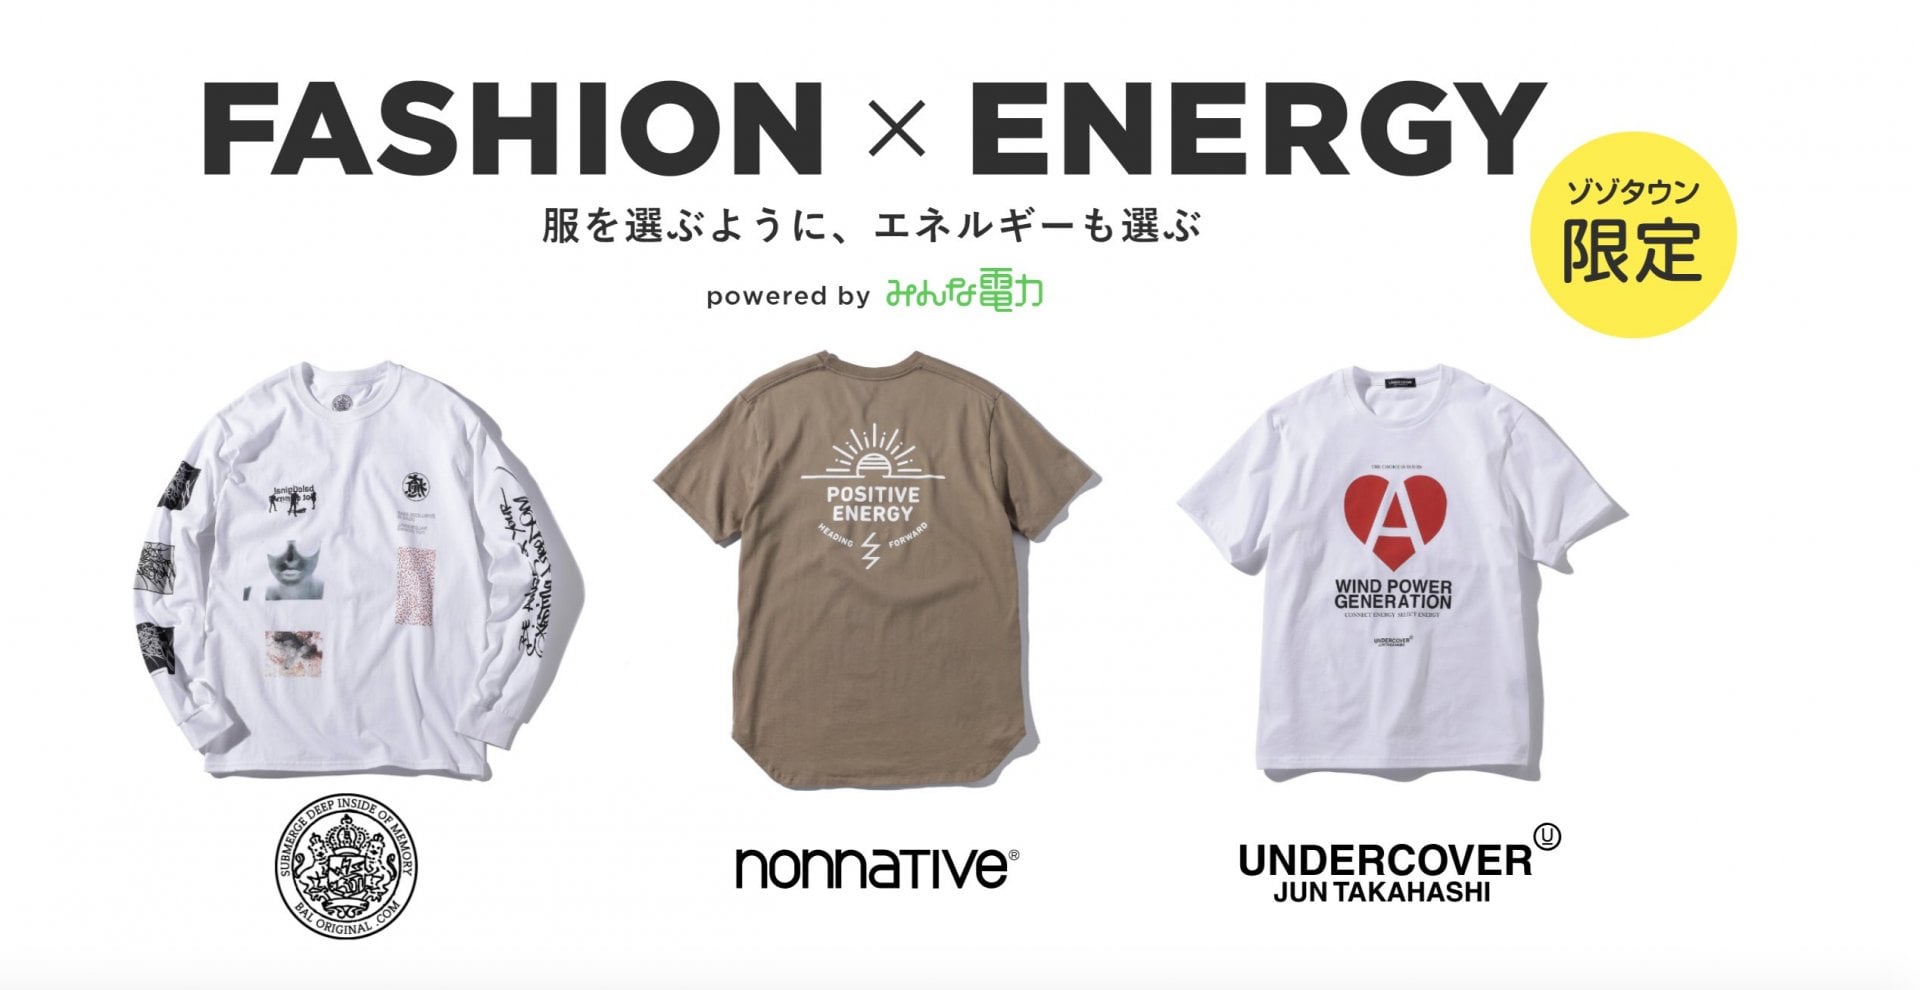 # 能量與時尚結合：日本千葉電力公司攜手 UNDERCOVER、BAL、nonnative 推出聯名商品 1